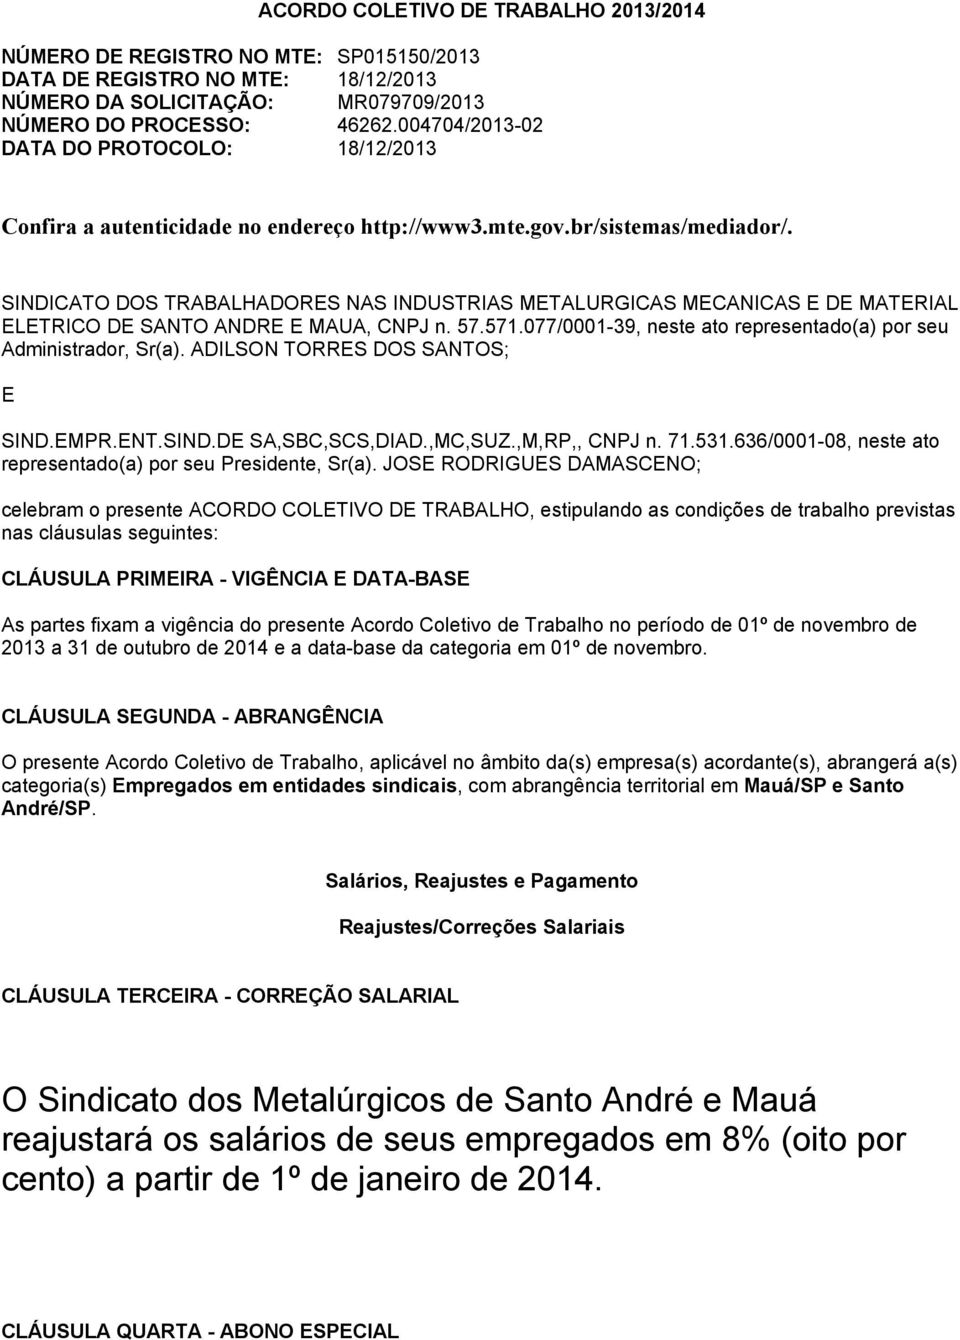 SINDICATO DOS TRABALHADORES NAS INDUSTRIAS METALURGICAS MECANICAS E DE MATERIAL ELETRICO DE SANTO ANDRE E MAUA, CNPJ n. 57.571.077/0001-39, neste ato representado(a) por seu Administrador, Sr(a).